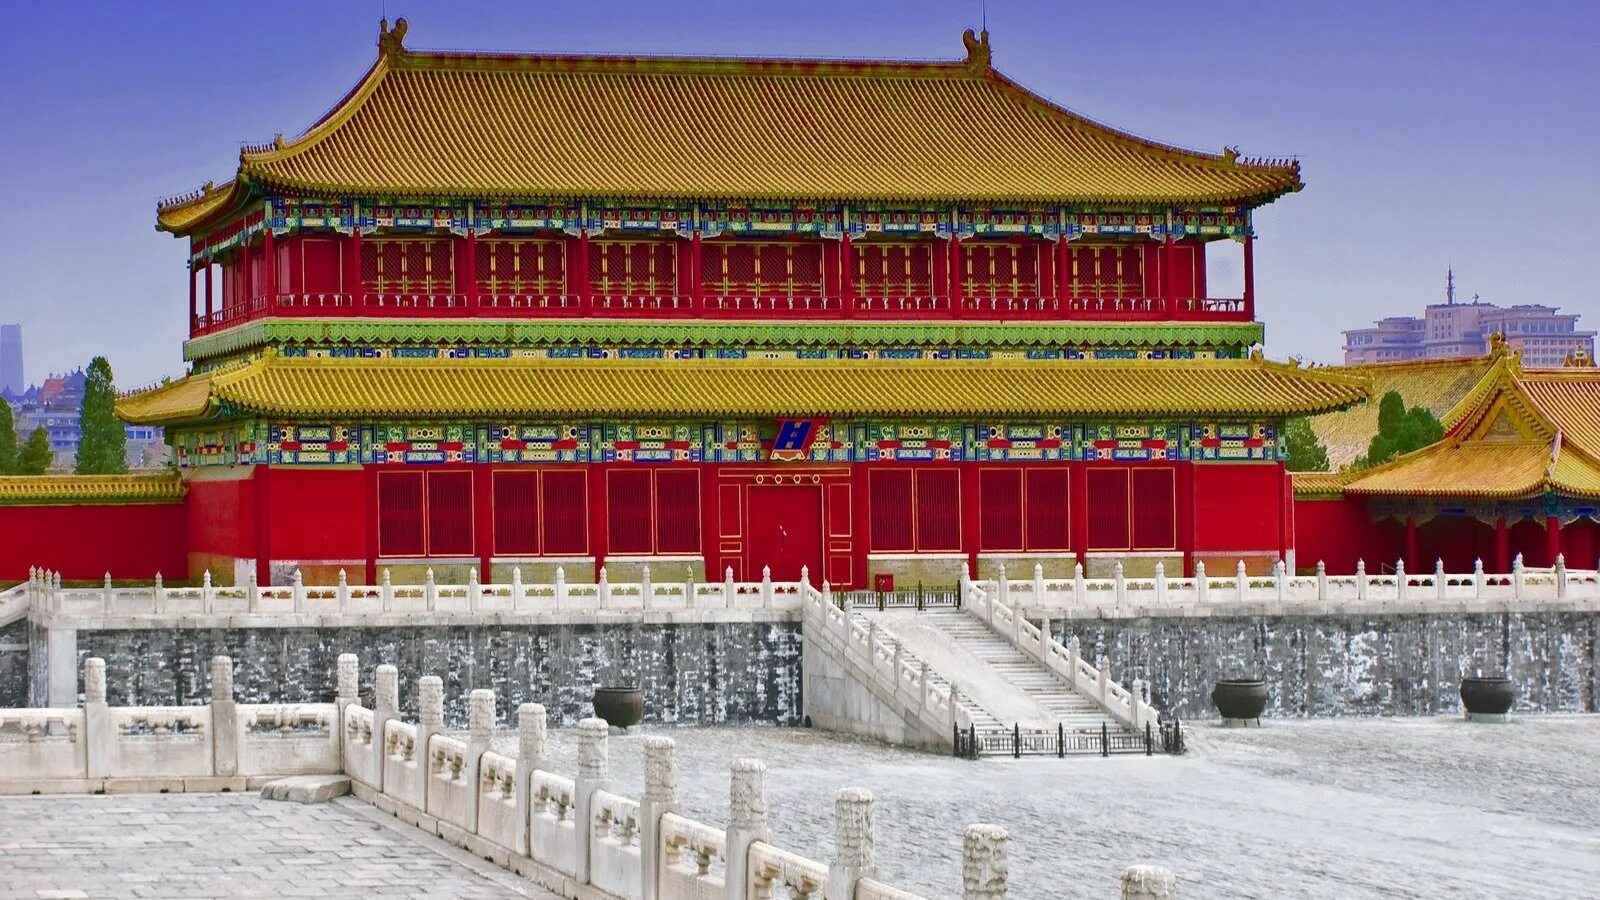 Пекин Запретный город Императорский дворец. Дворец Гугун в Пекине. Запретный город (дворец Гугун) в Пекине. Дворец китайского императора, Запретный город, Пекин.. Золото поднебесной